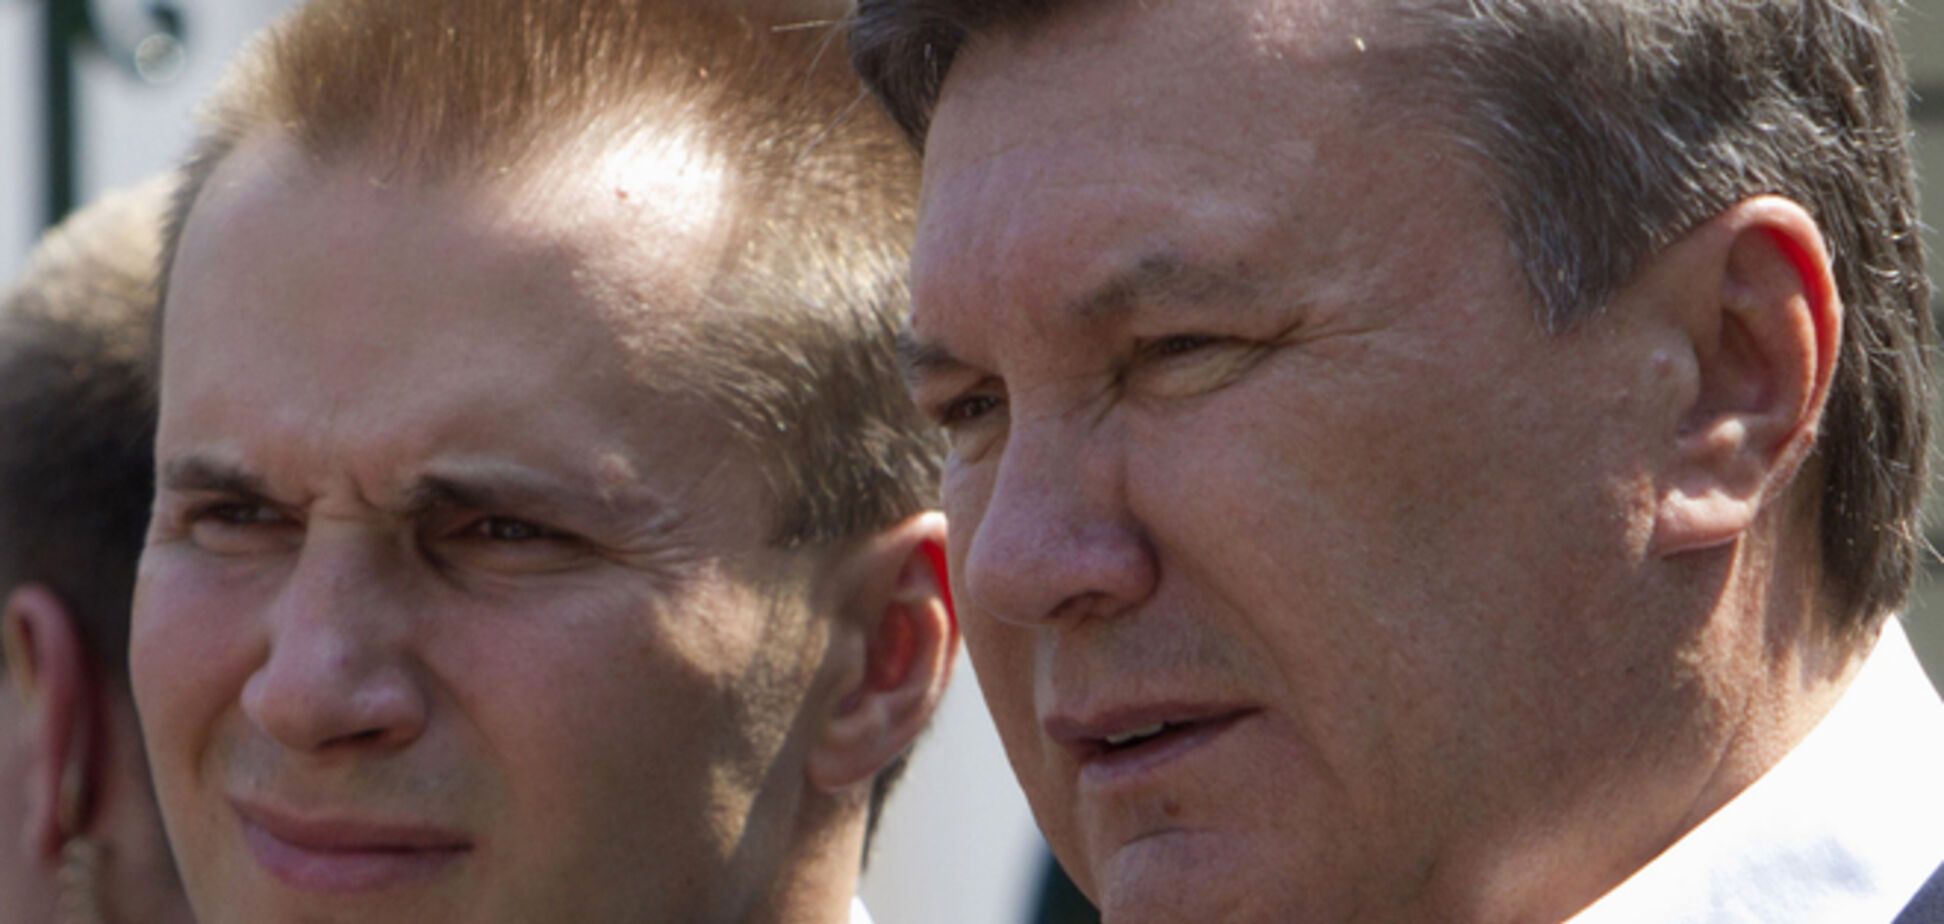 Син Януковича раптово продав 'Донбасенерго': що про це відомо